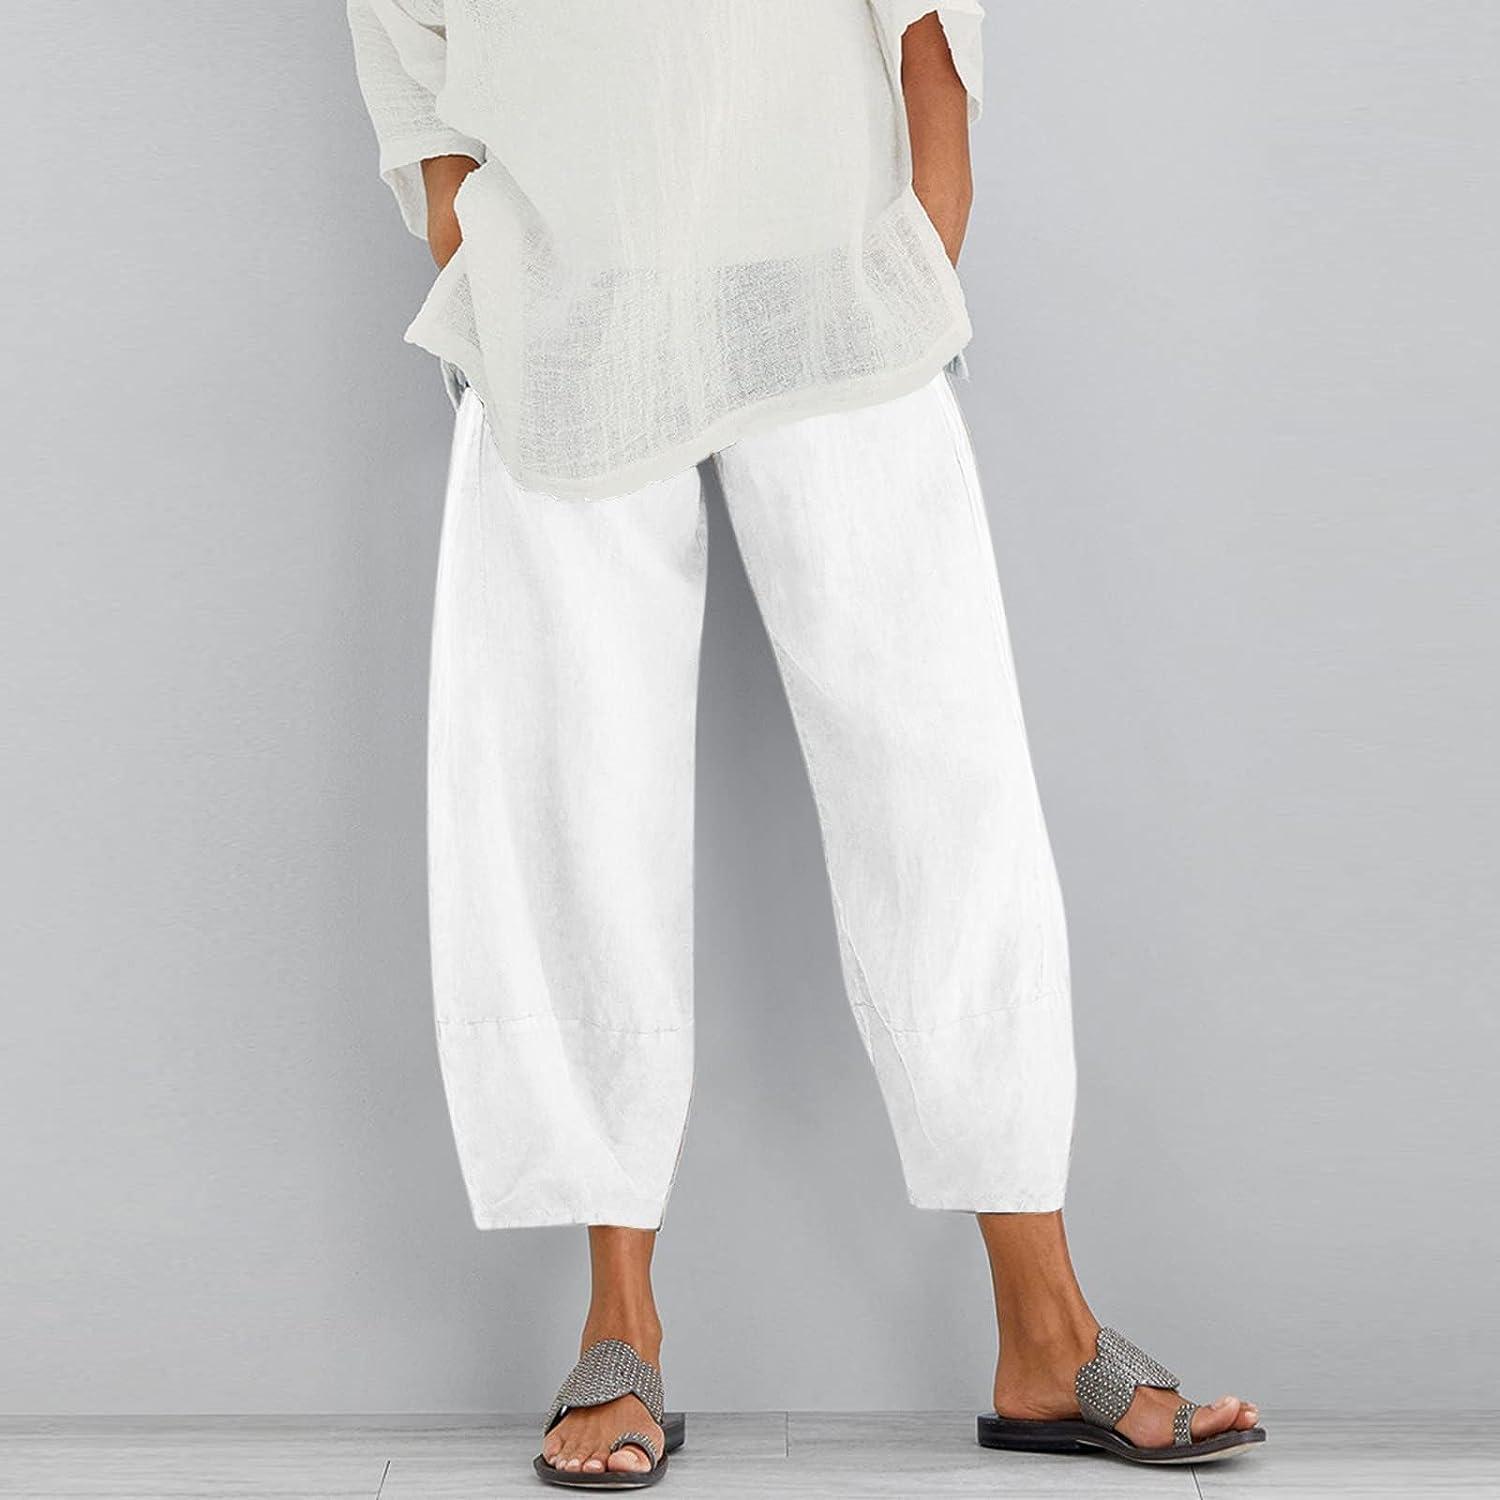 SHOPESSA Womens Plus Size Capri Pants Summer Casual Cotton Linen